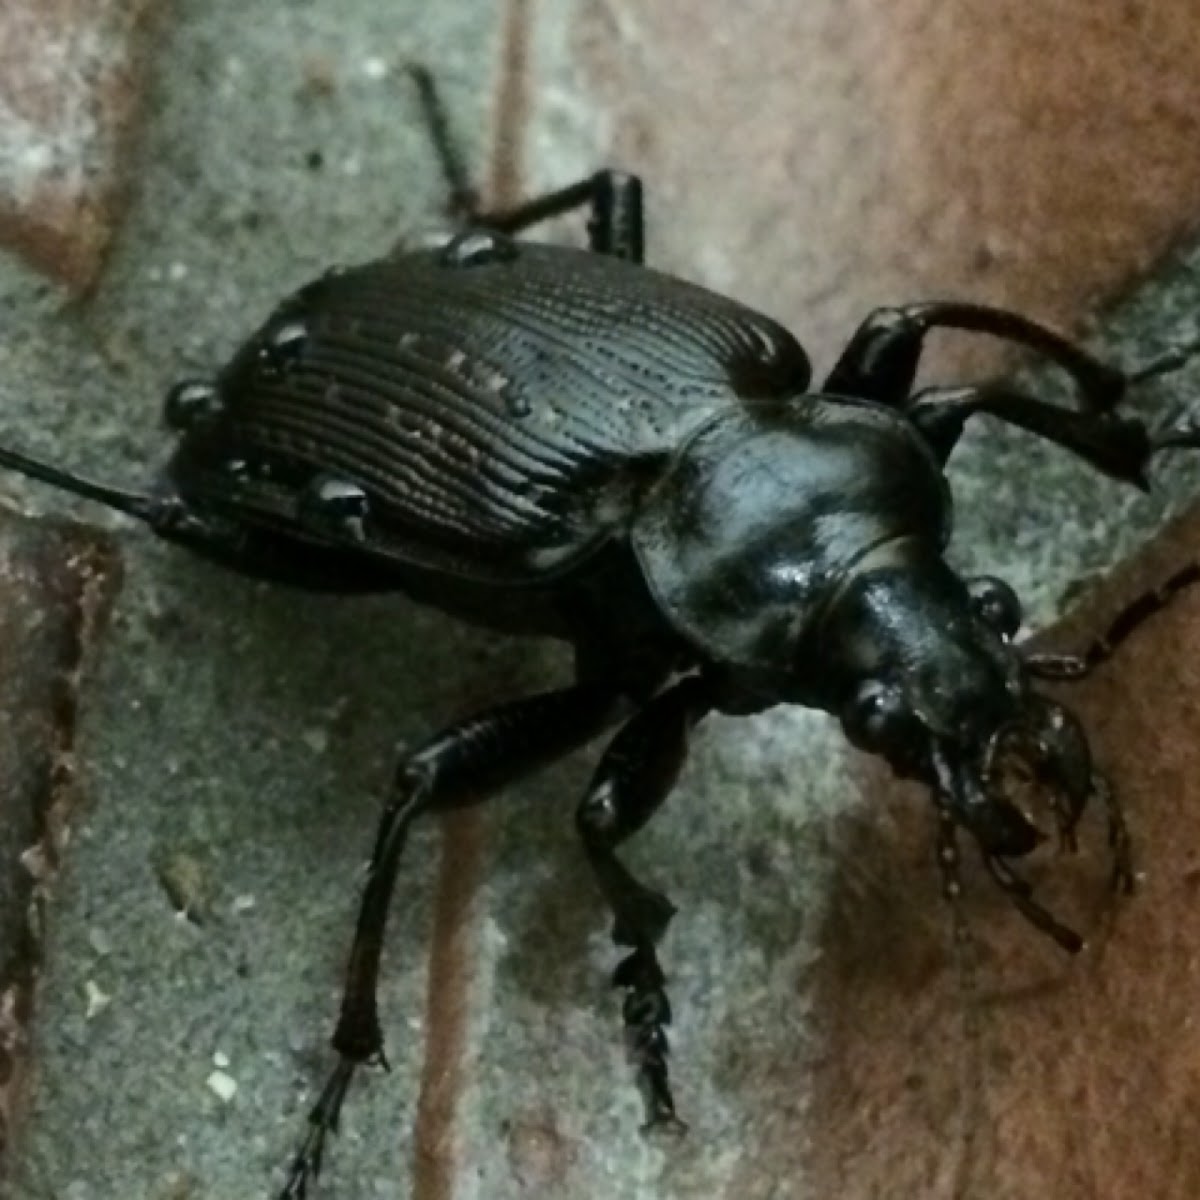 Common black ground beetle